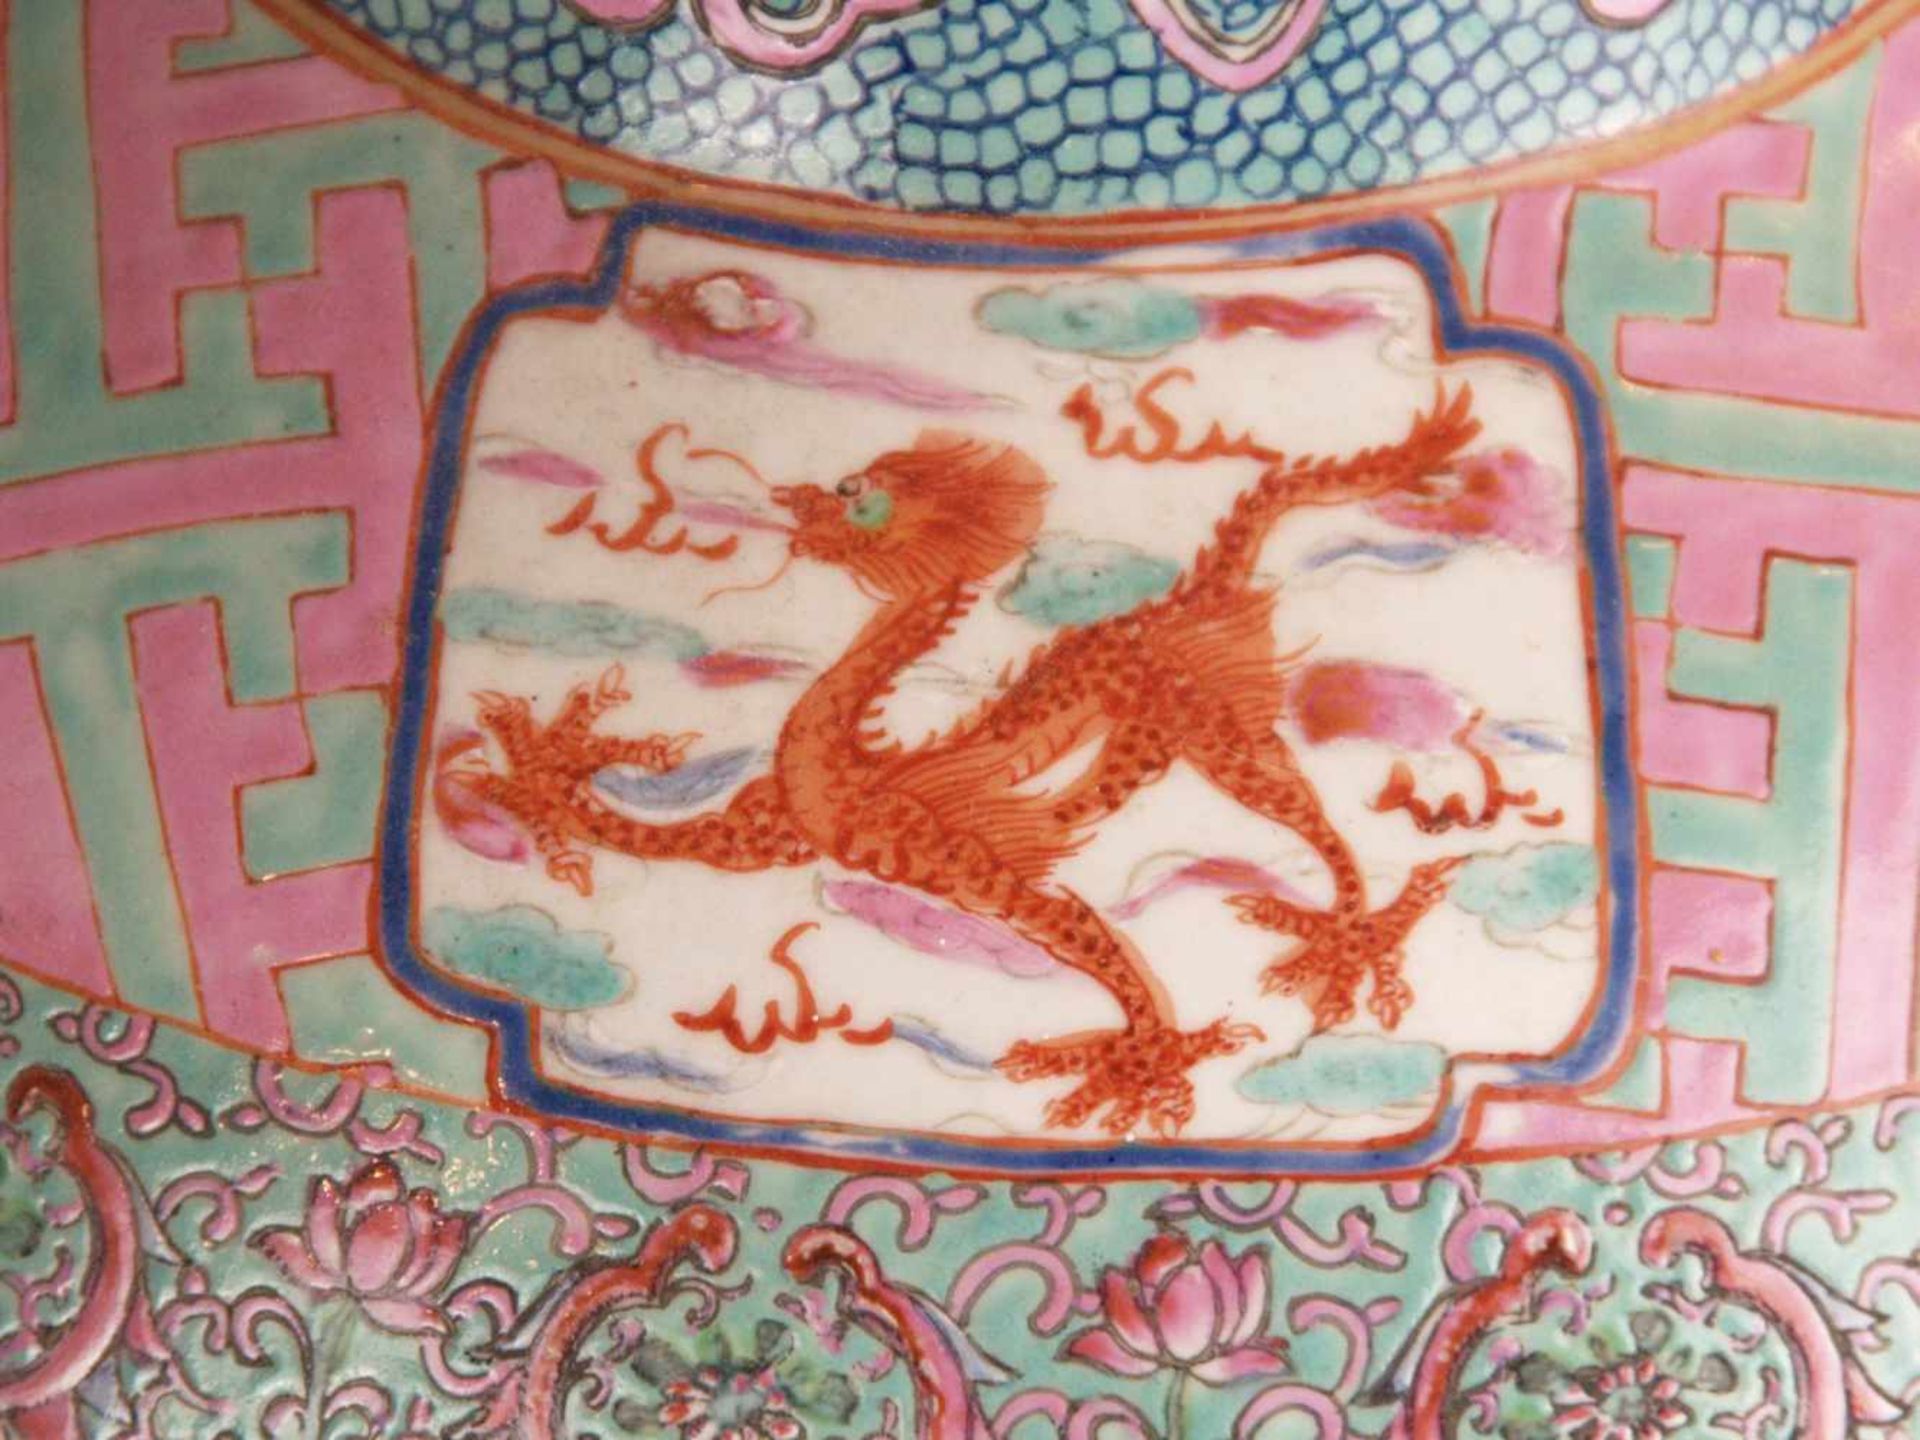 Paar Bodenvasen - China 20.Jh.,Tian qiu ping-Typus, üppiger Dekor in polychromen Emailfarben, auf - Bild 5 aus 15